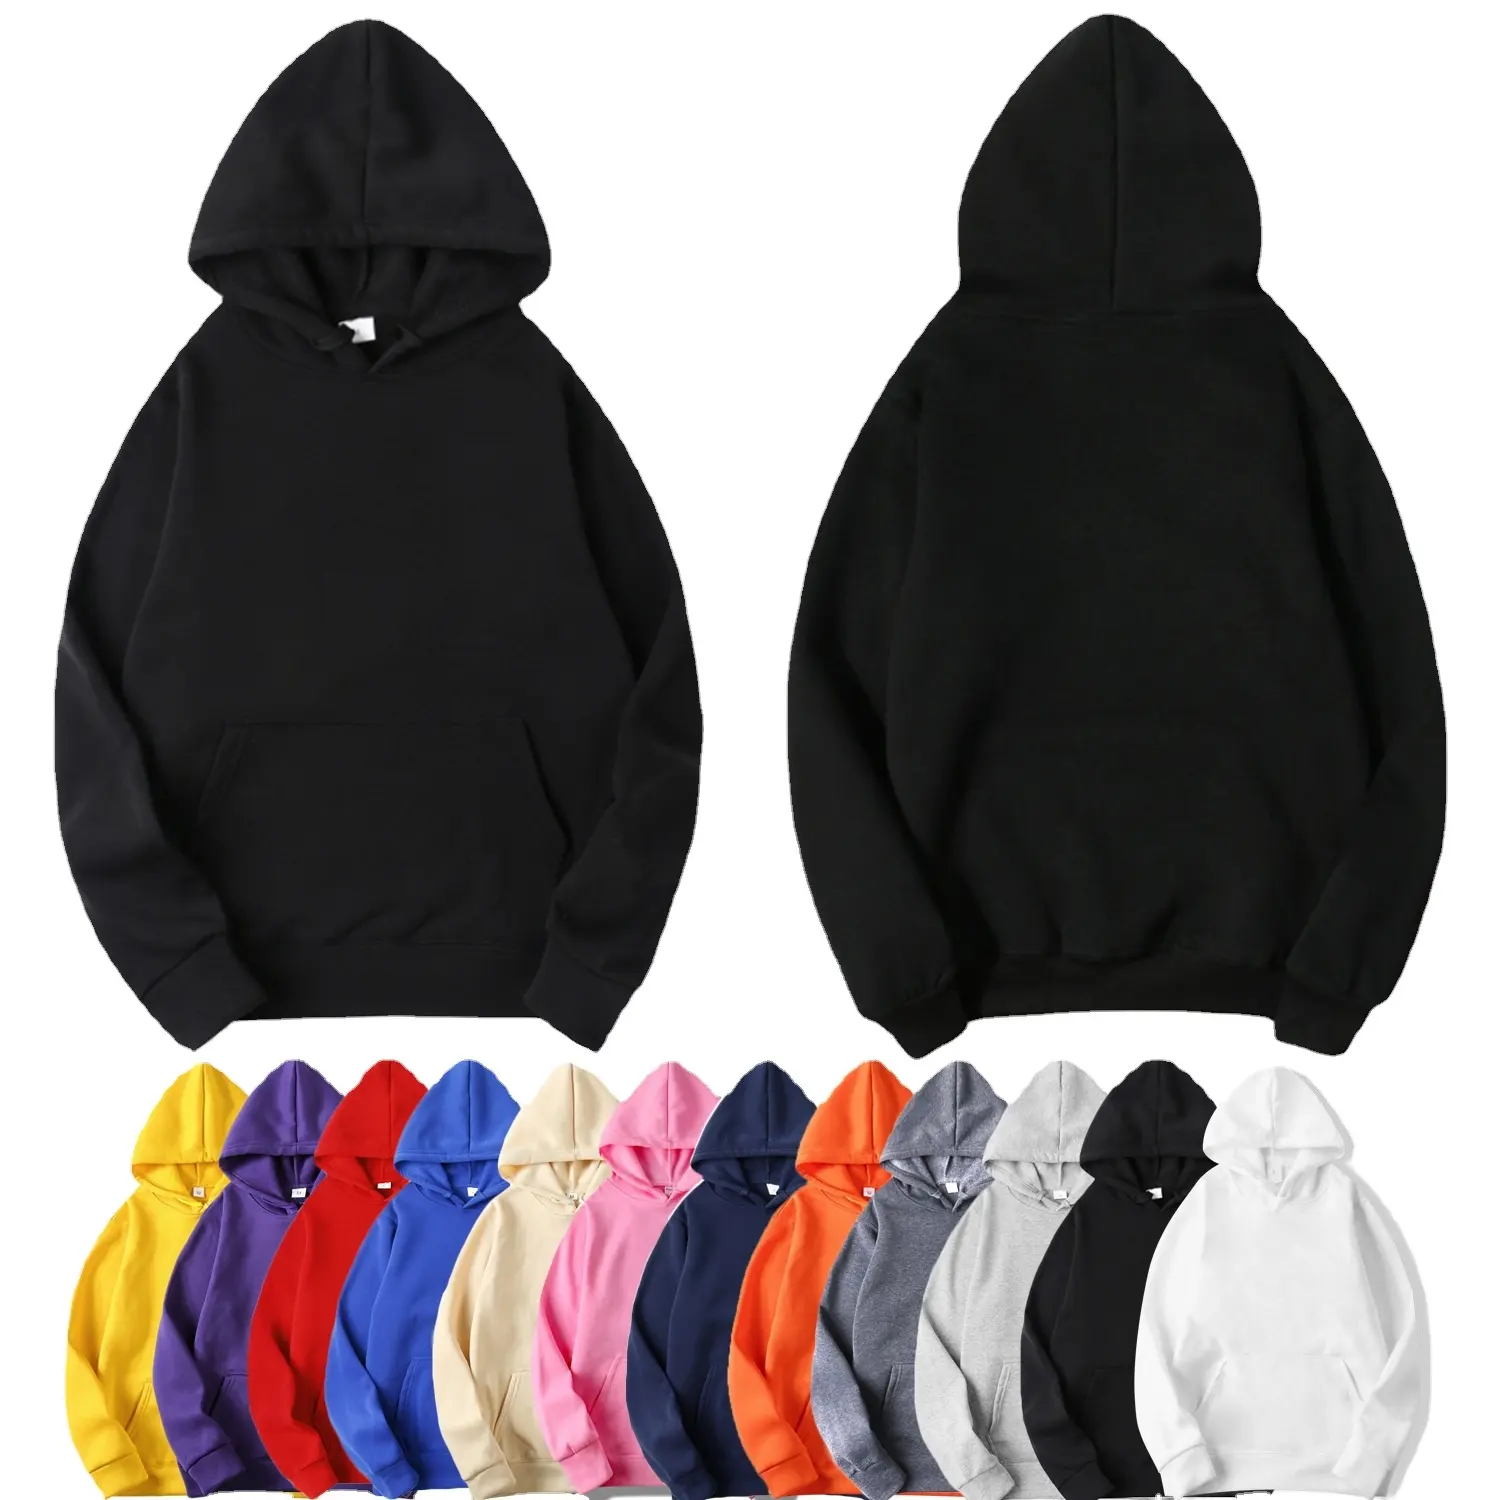 उच्च गुणवत्ता प्लस आकार hoodies अपने खुद के डिजाइन के लिए व्यावसायिक निर्माण रिक्त hoodies मुद्रित